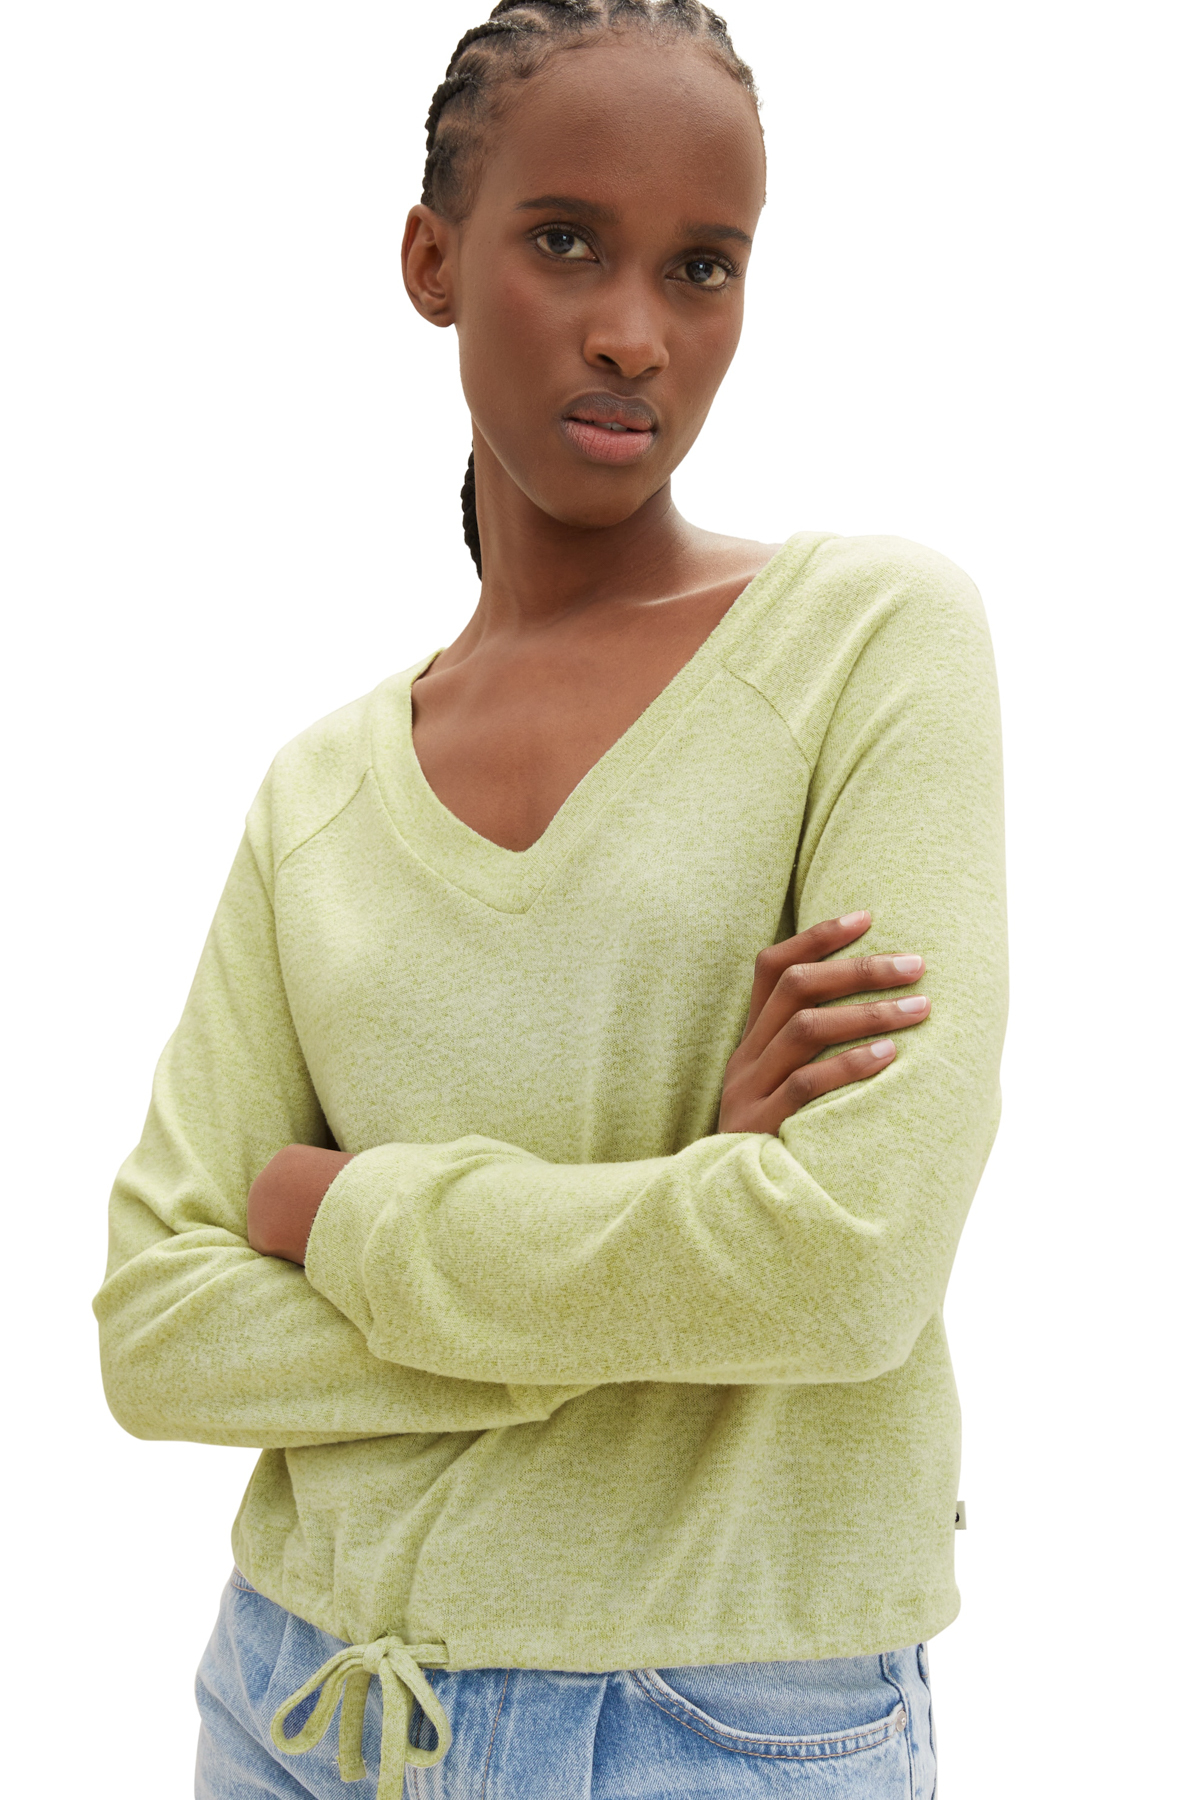 Футболка Женская/Девочка уютная футболка реглан Tom Tailor Denim, зеленый блузка tom tailor с короткими рукавами зеленый мультиколор